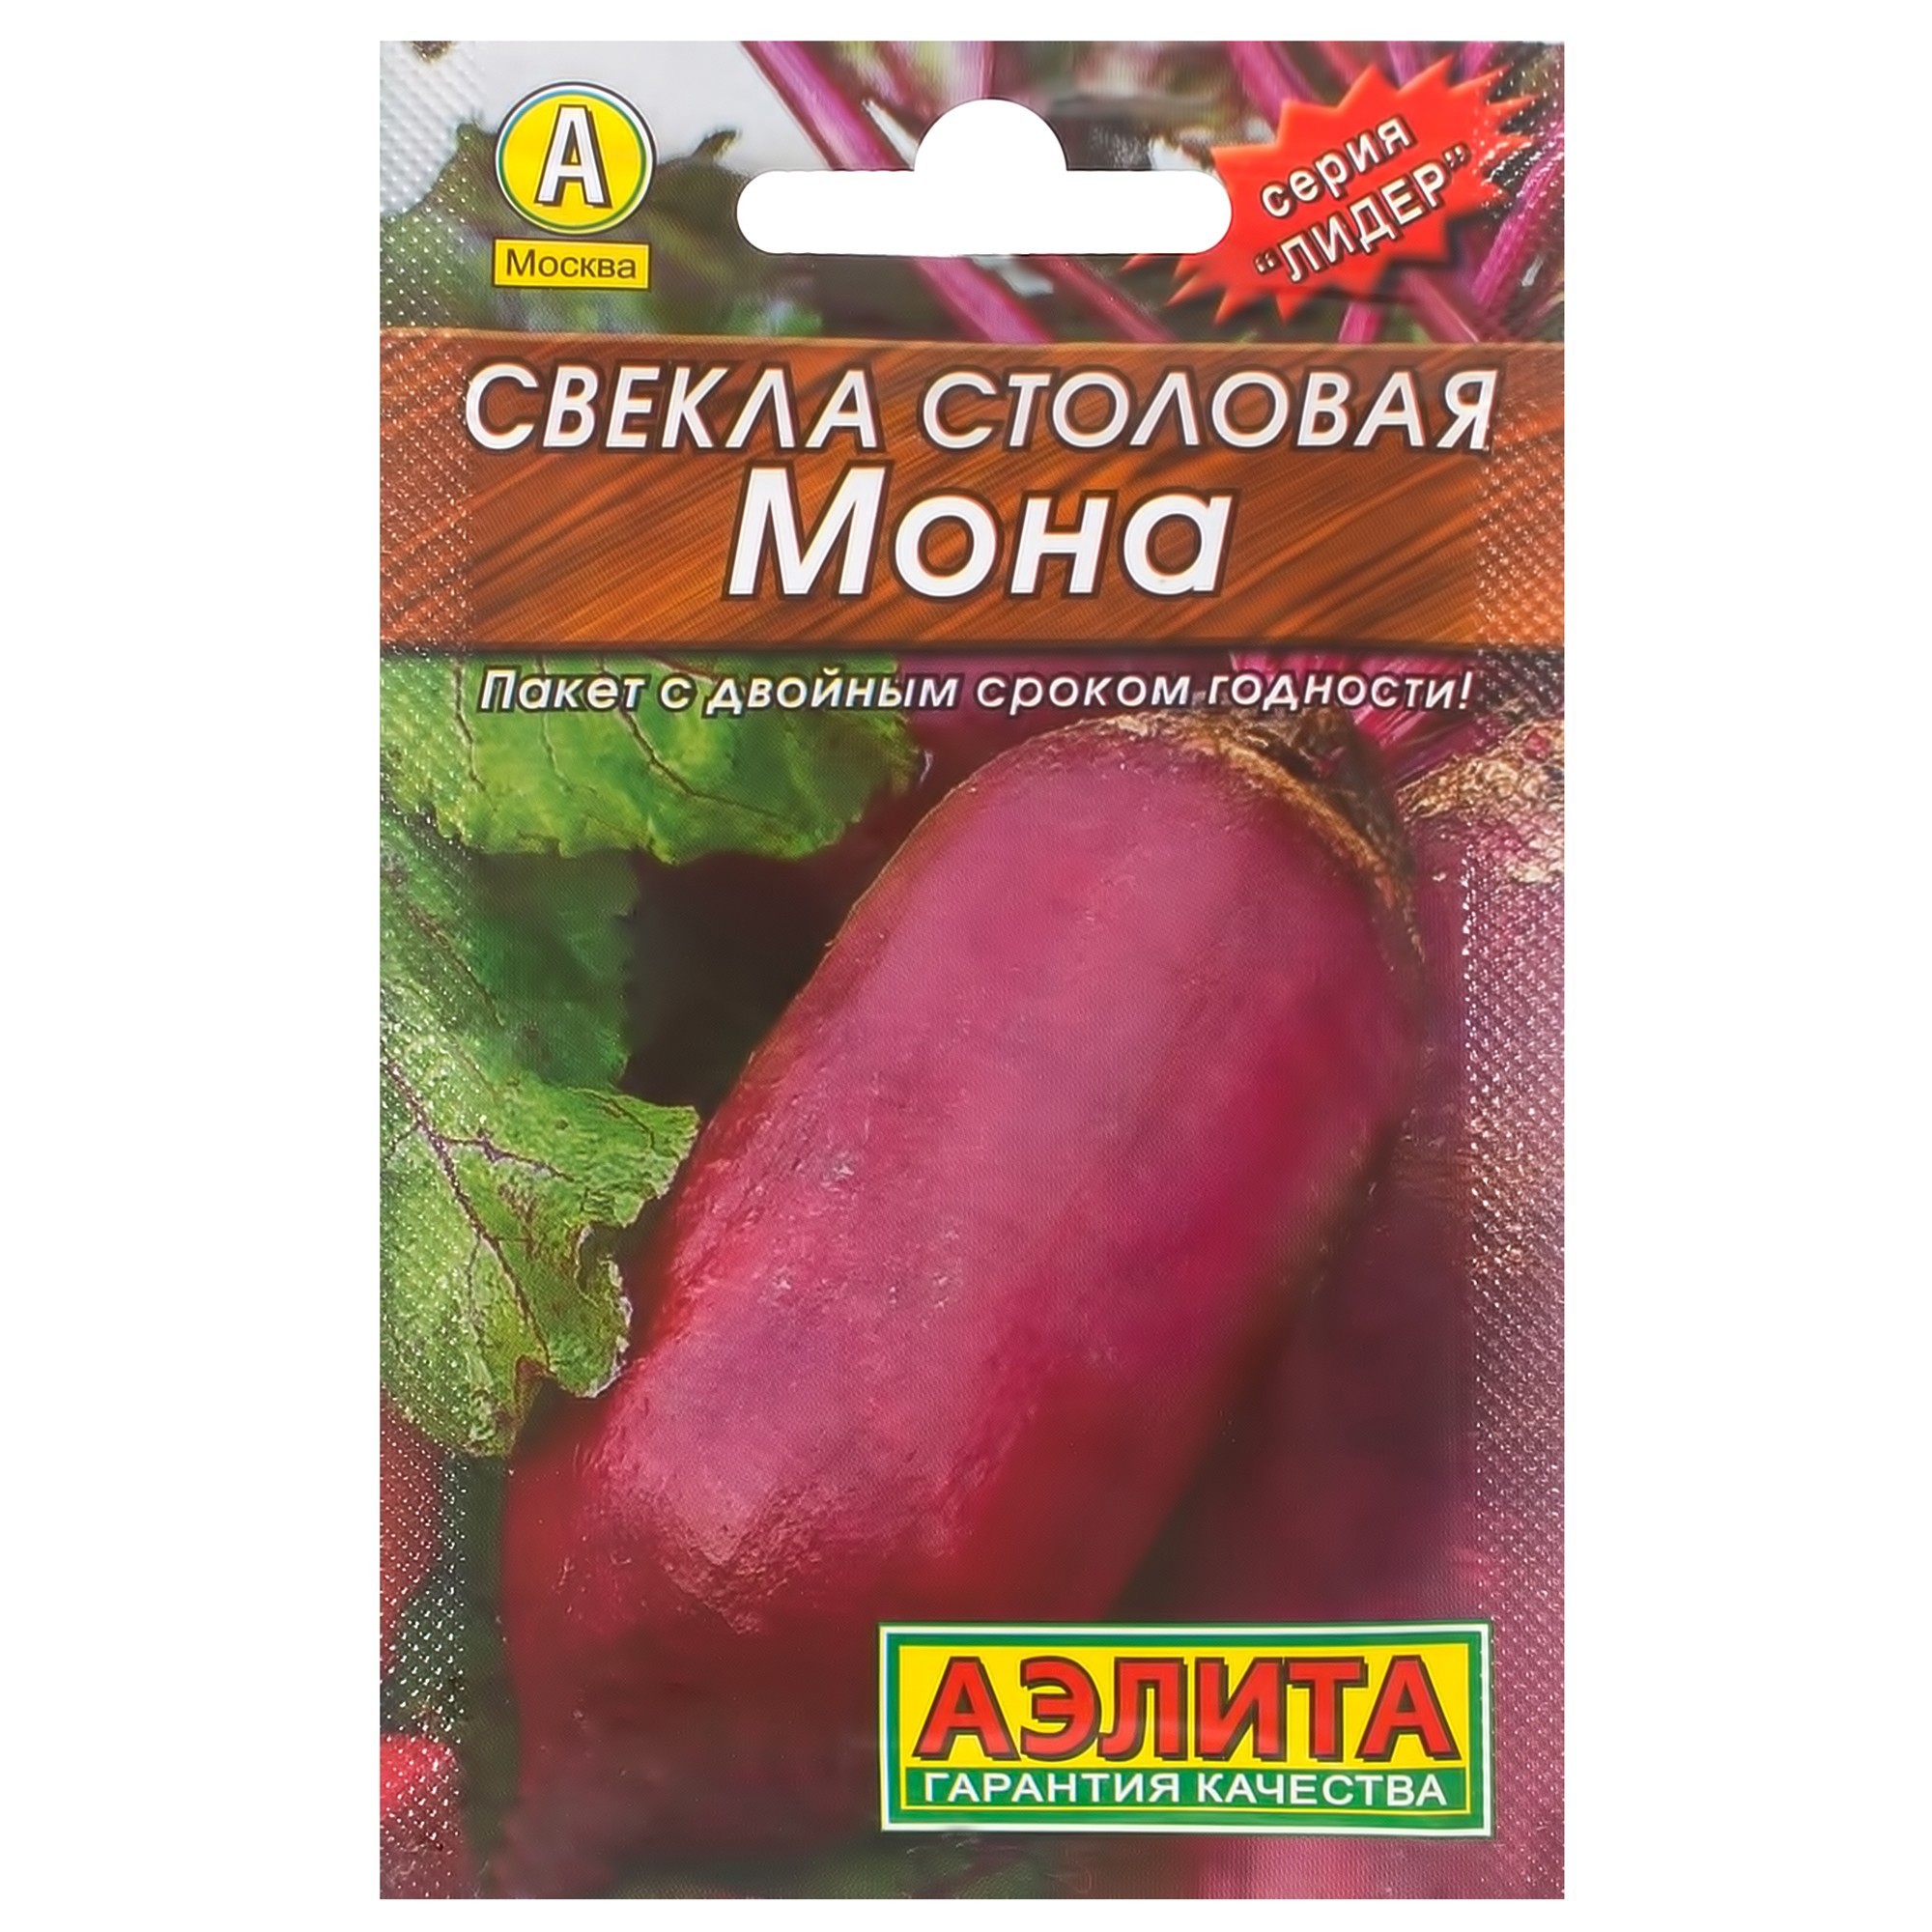 Семена Свёкла столовая «Мона» (Лидер) в Москве – купить по низкой цене винтернет-магазине Леруа Мерлен